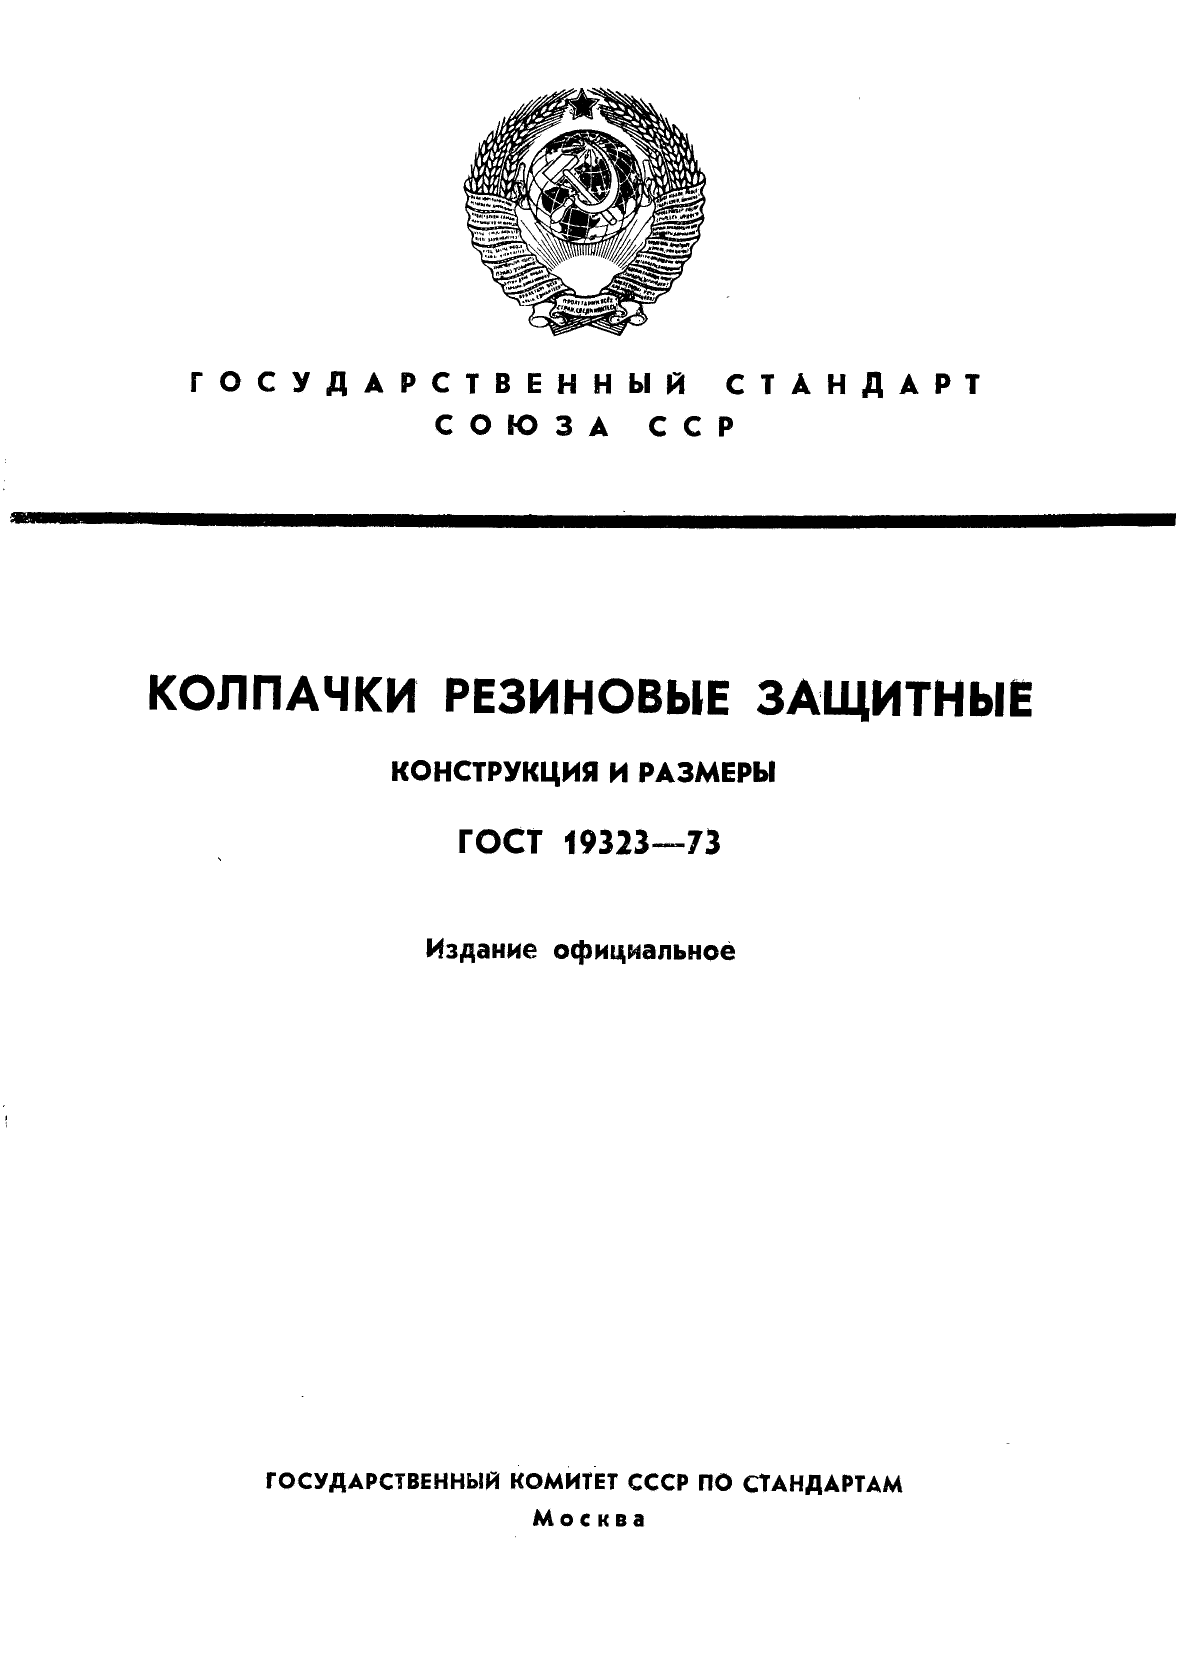  19323-73,  1.